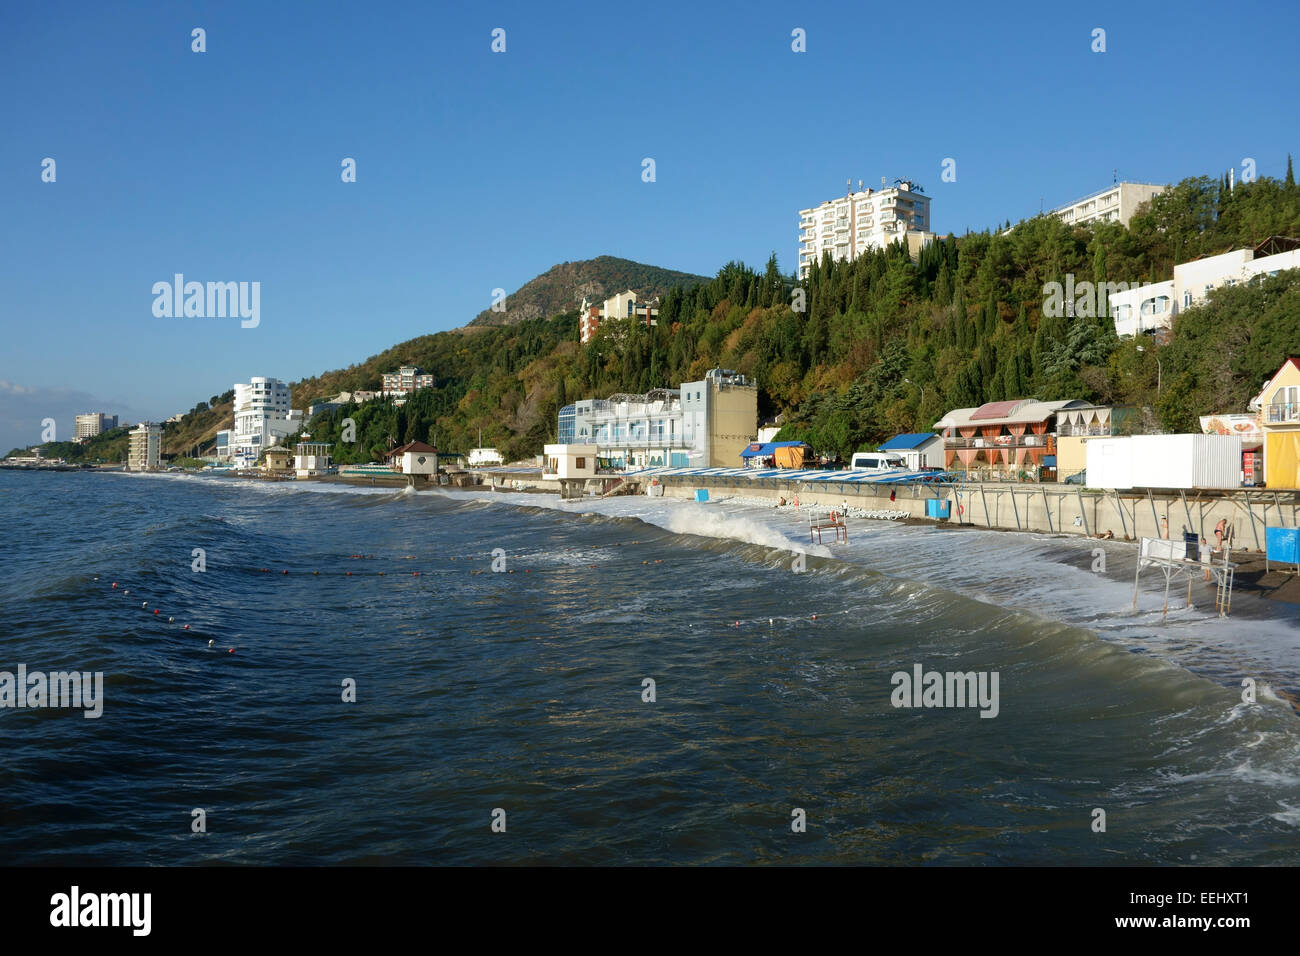 Public beach in the resort town of Alushta, Crimea, Russia Stock Photo